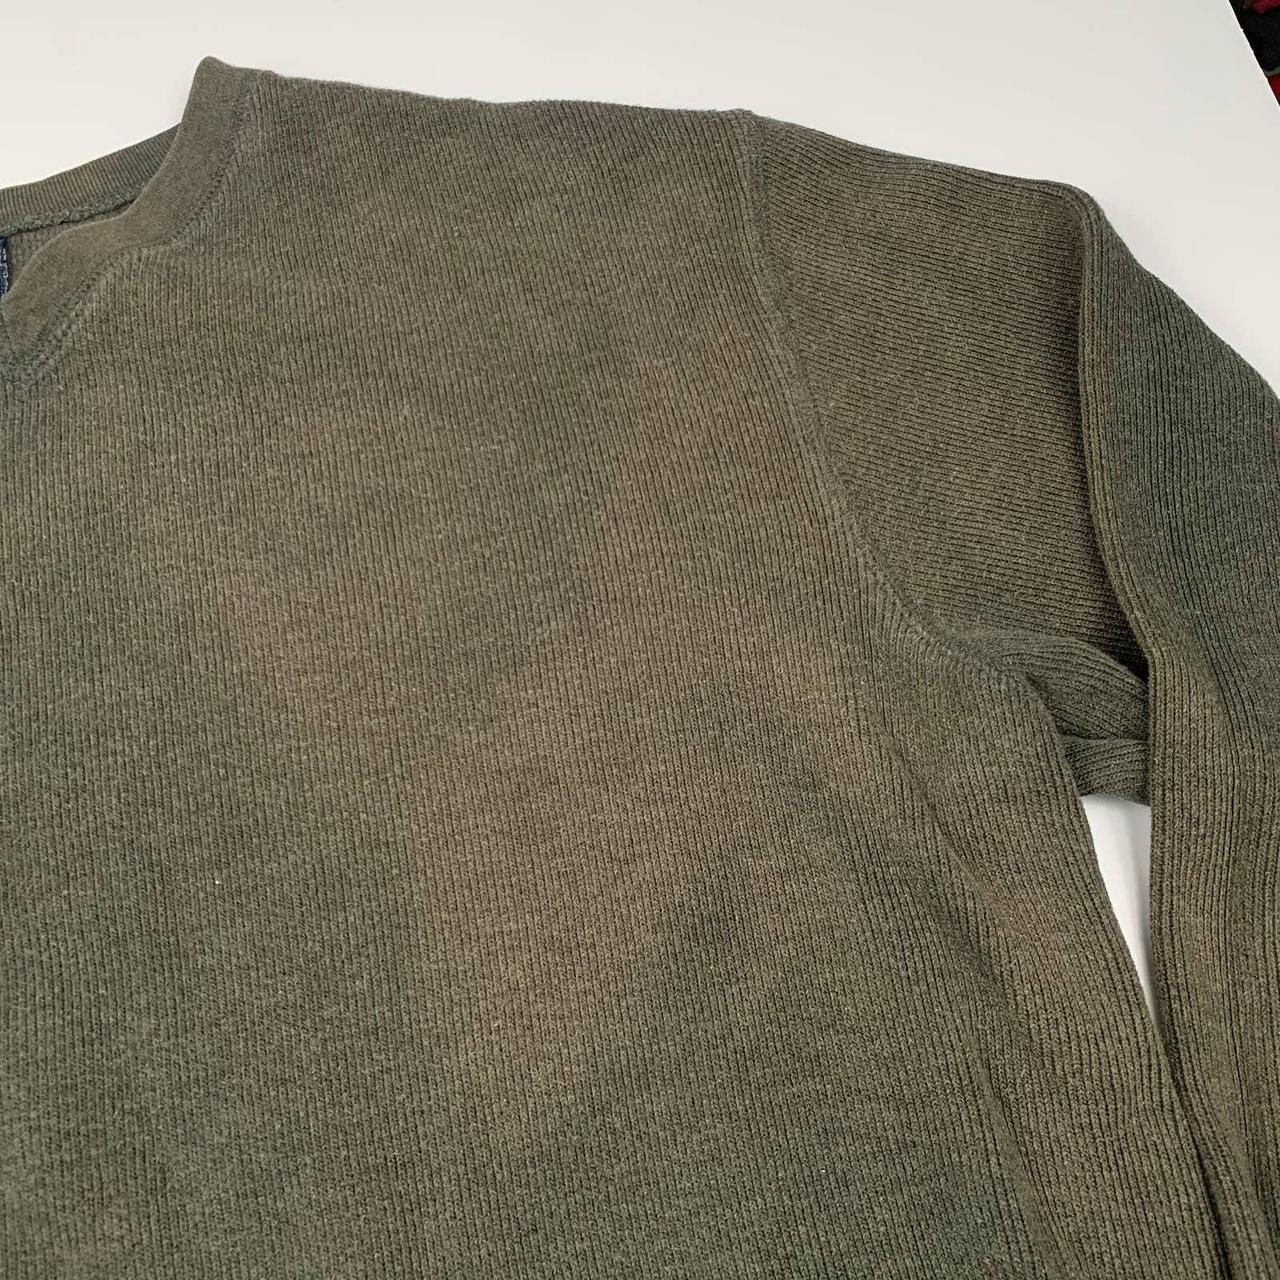 Vintage gap green blank sweatshirt crewneck. Has... - Depop